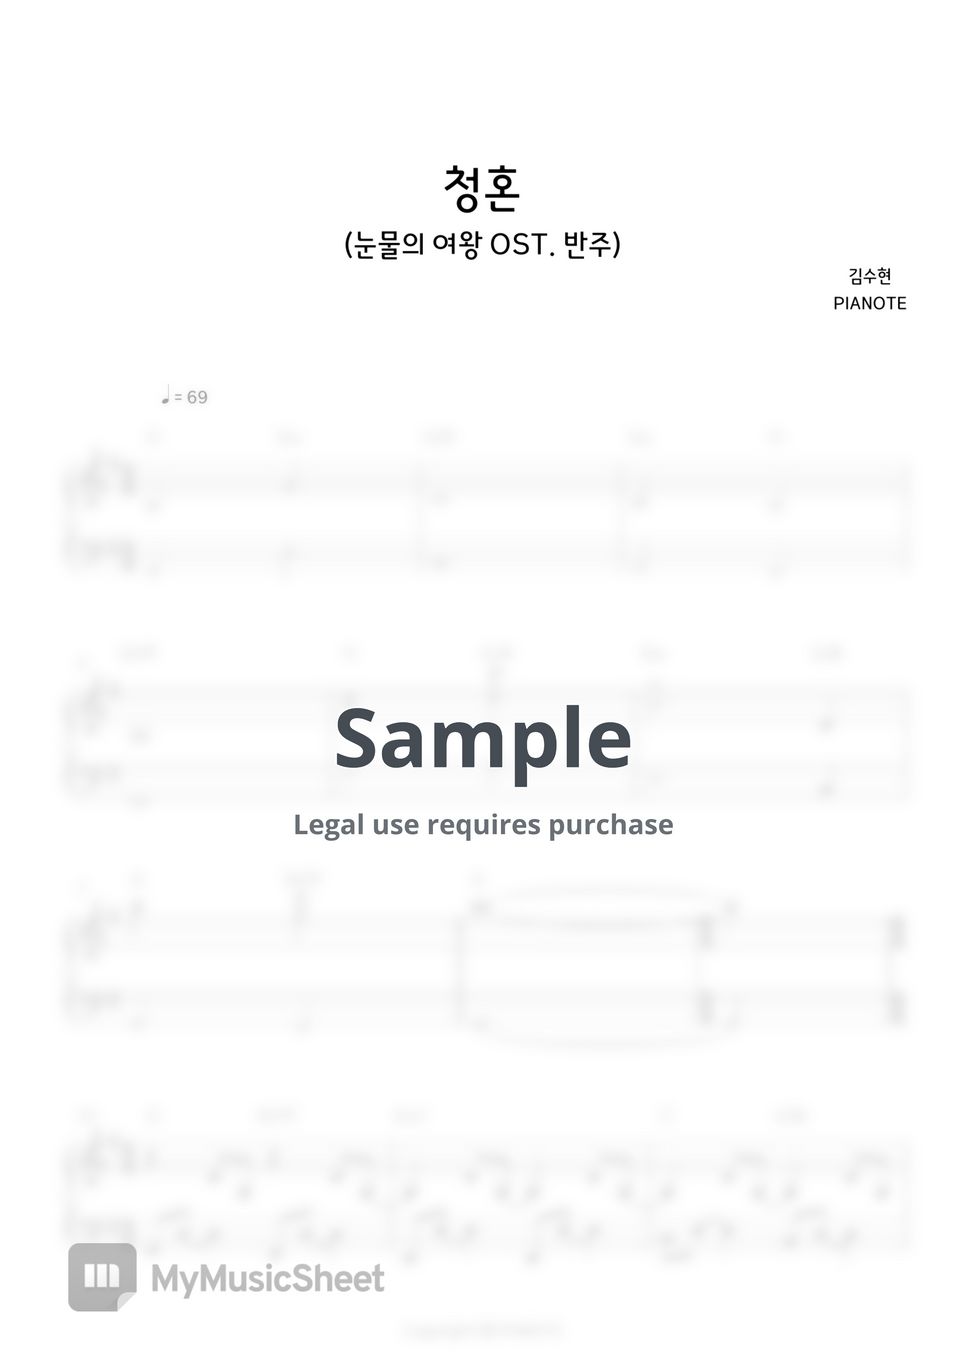 김수현 - 청혼(Way Home)(눈물의 여왕 OST) (MR INST 반주 쉬운 버전) by PIANOTE피아노트